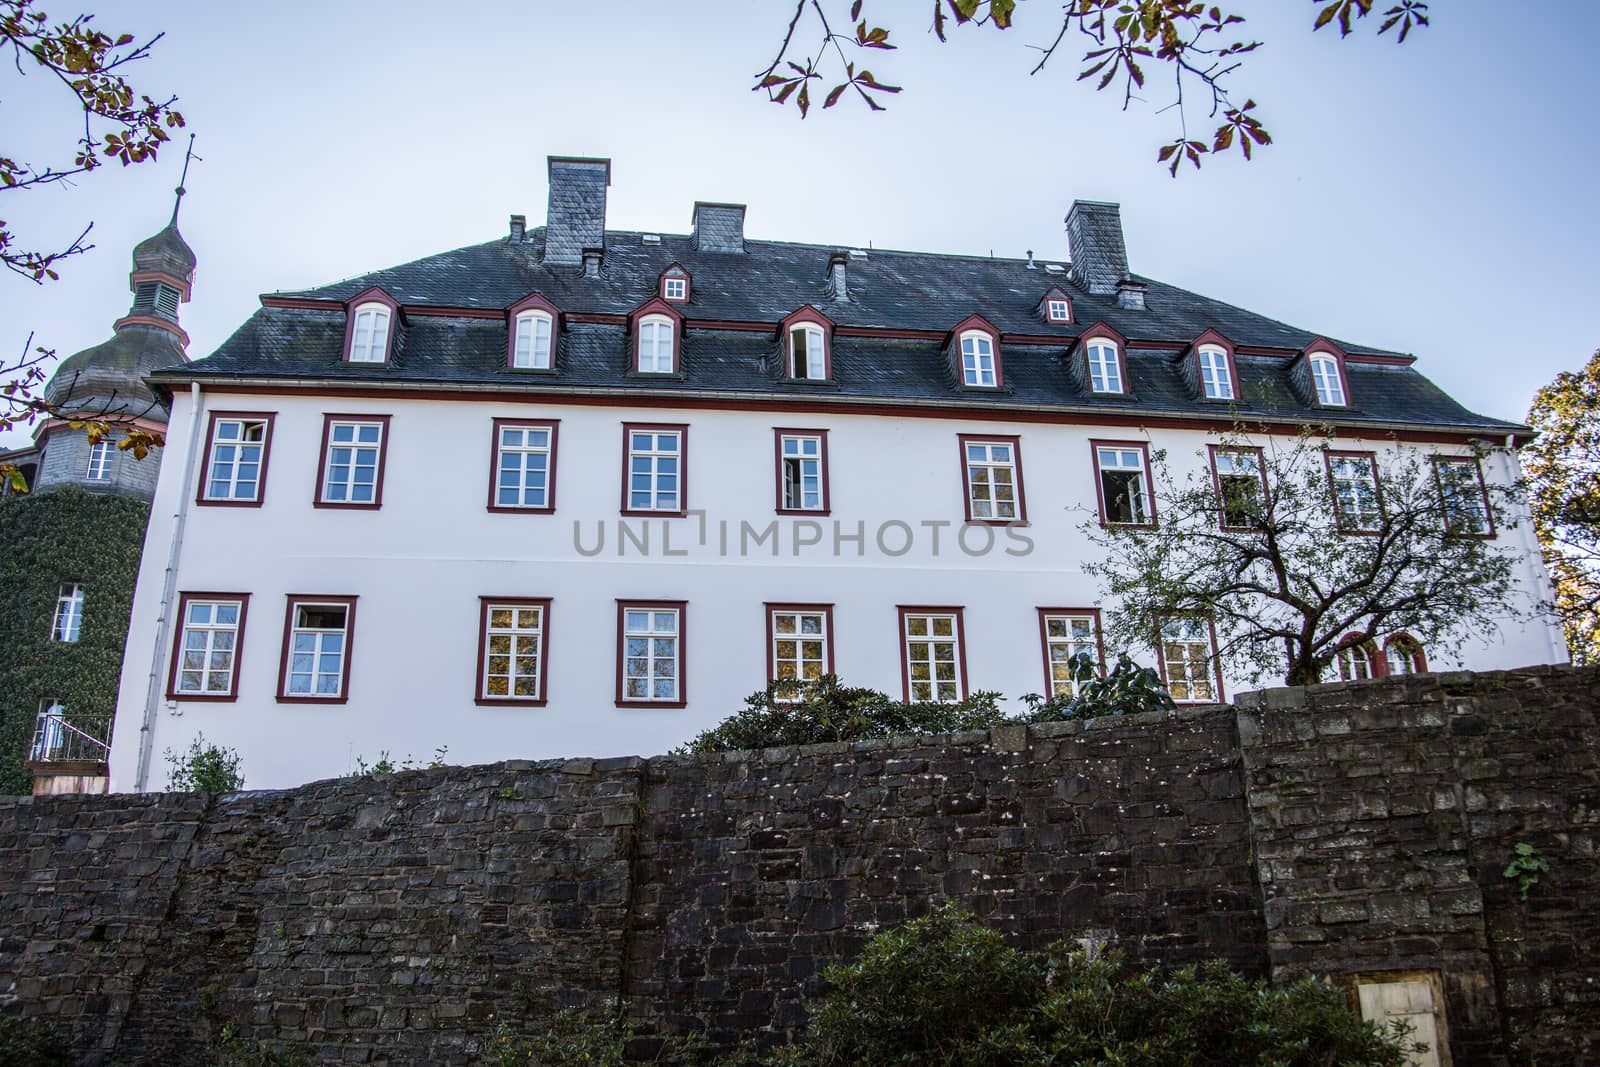 Siegen-Wittgenstein Castle in Bad Berleburg